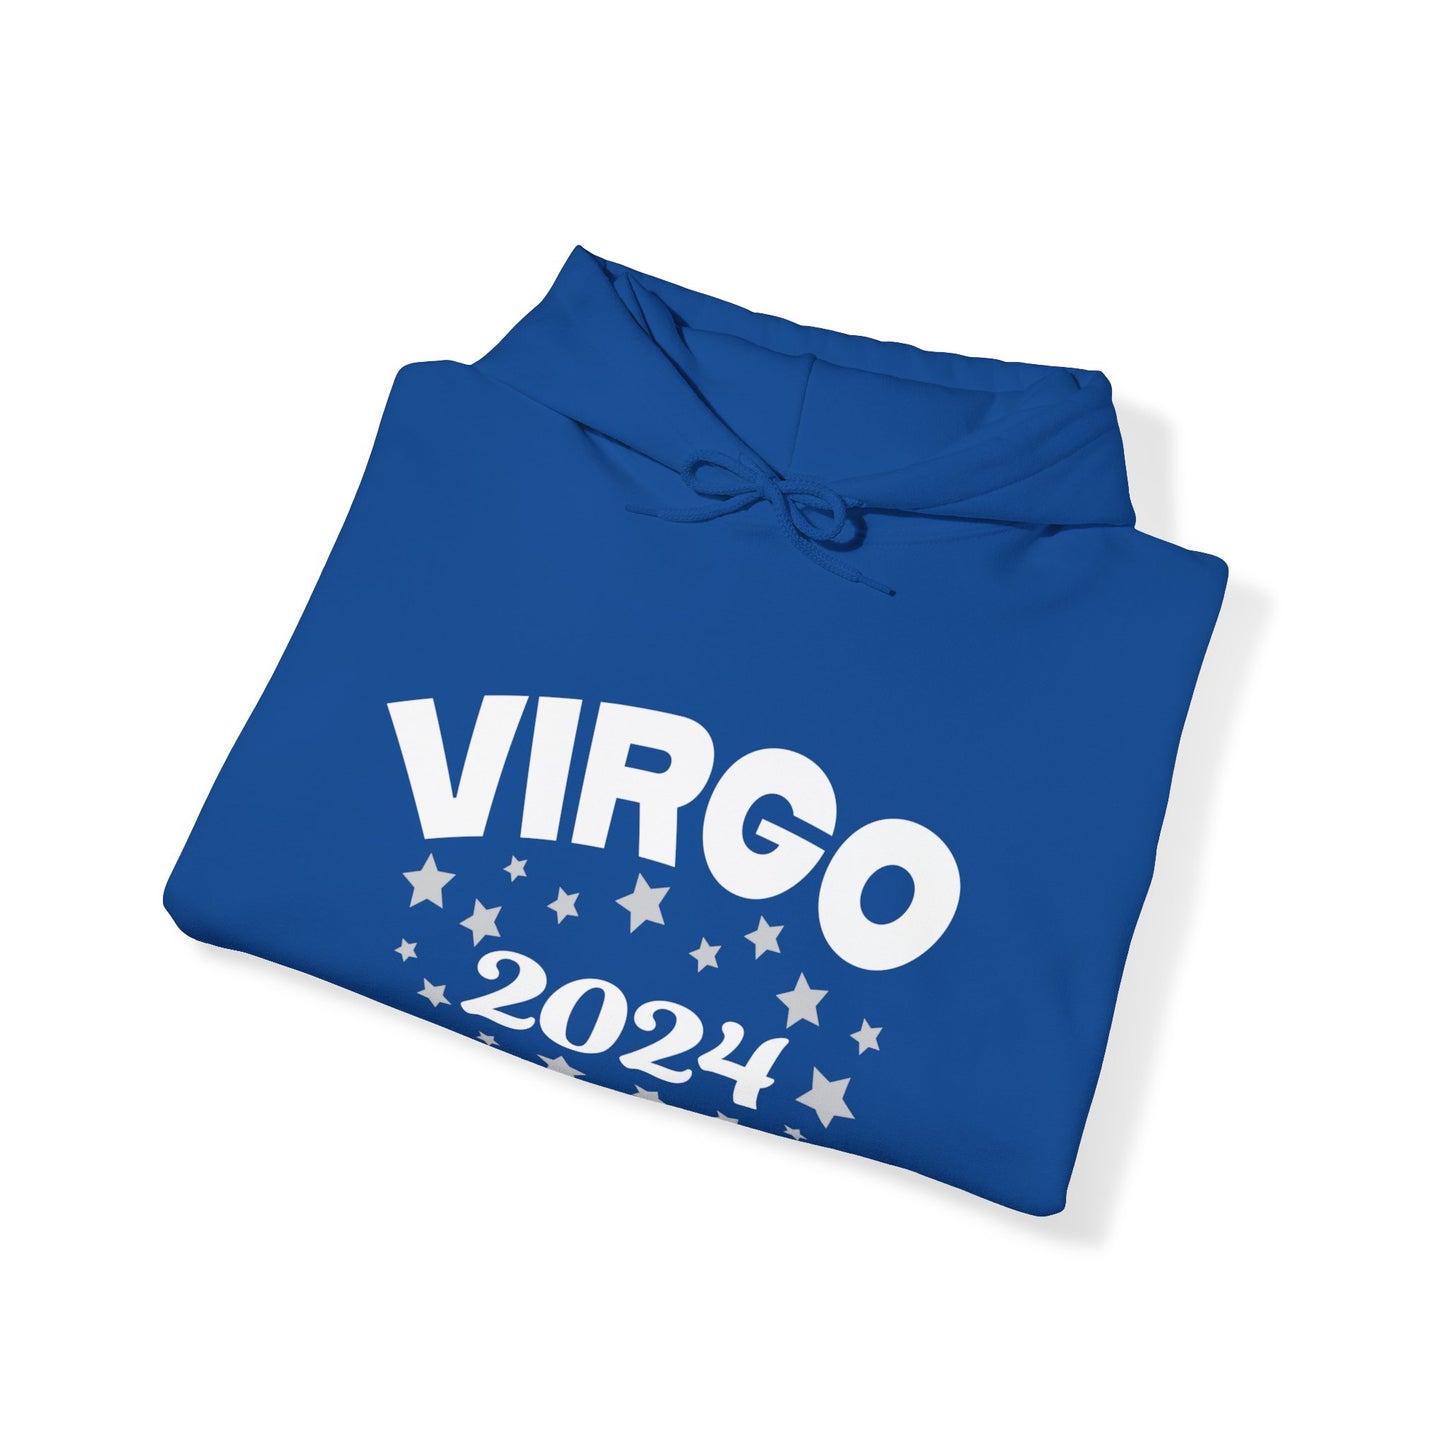 Virgo Hooded Sweatshirt 2024